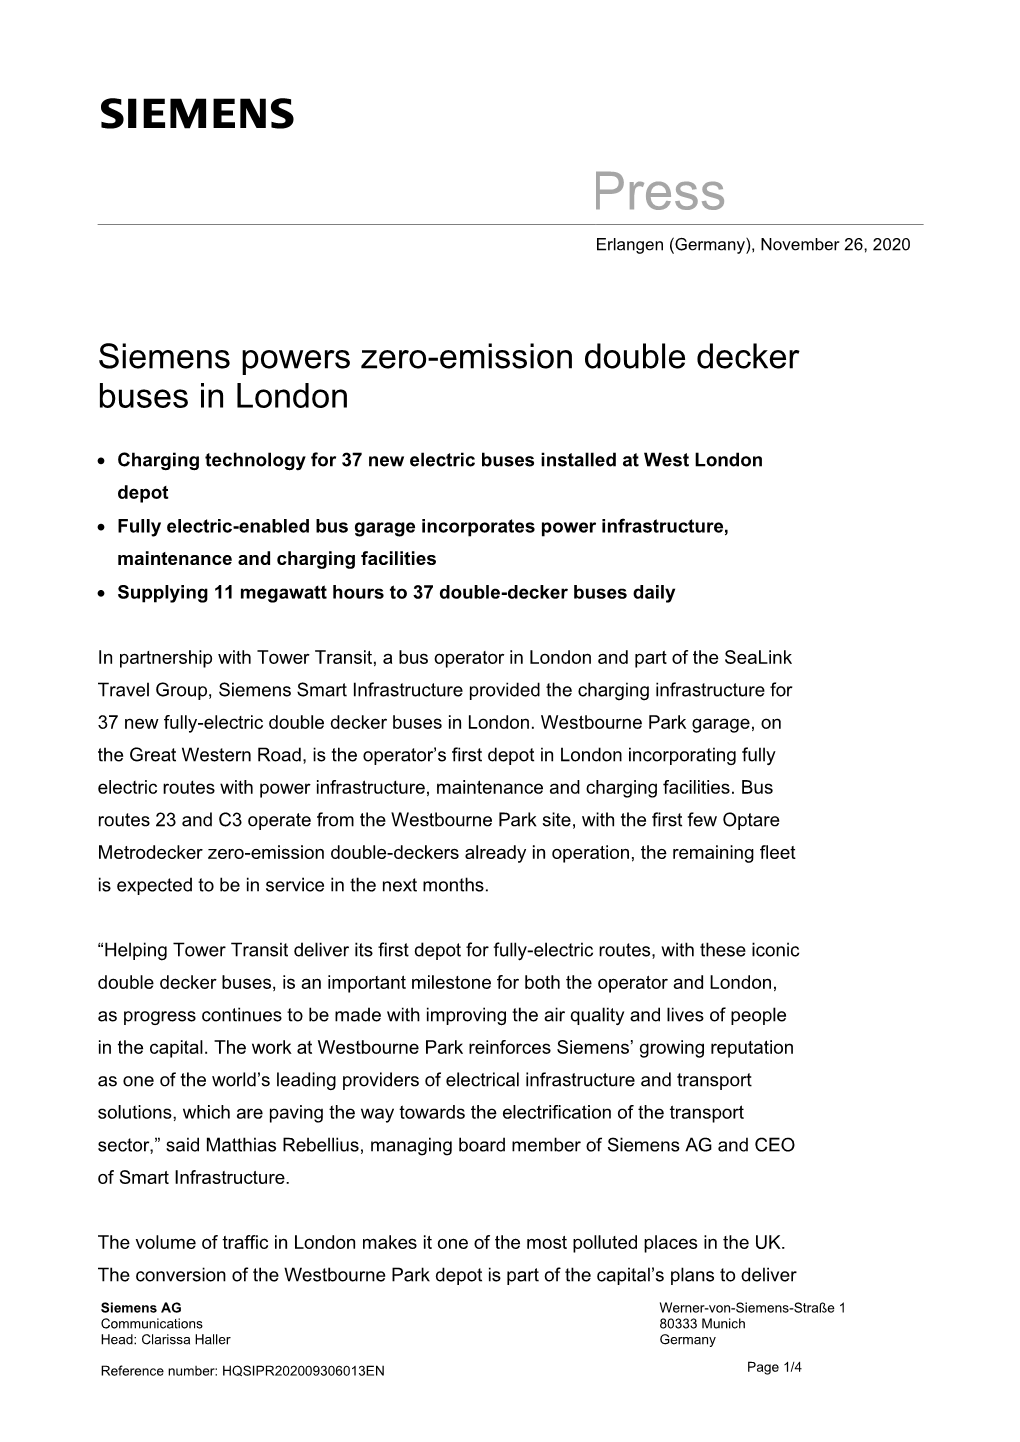 Siemens Powers Zero-Emission Double Decker Buses in London